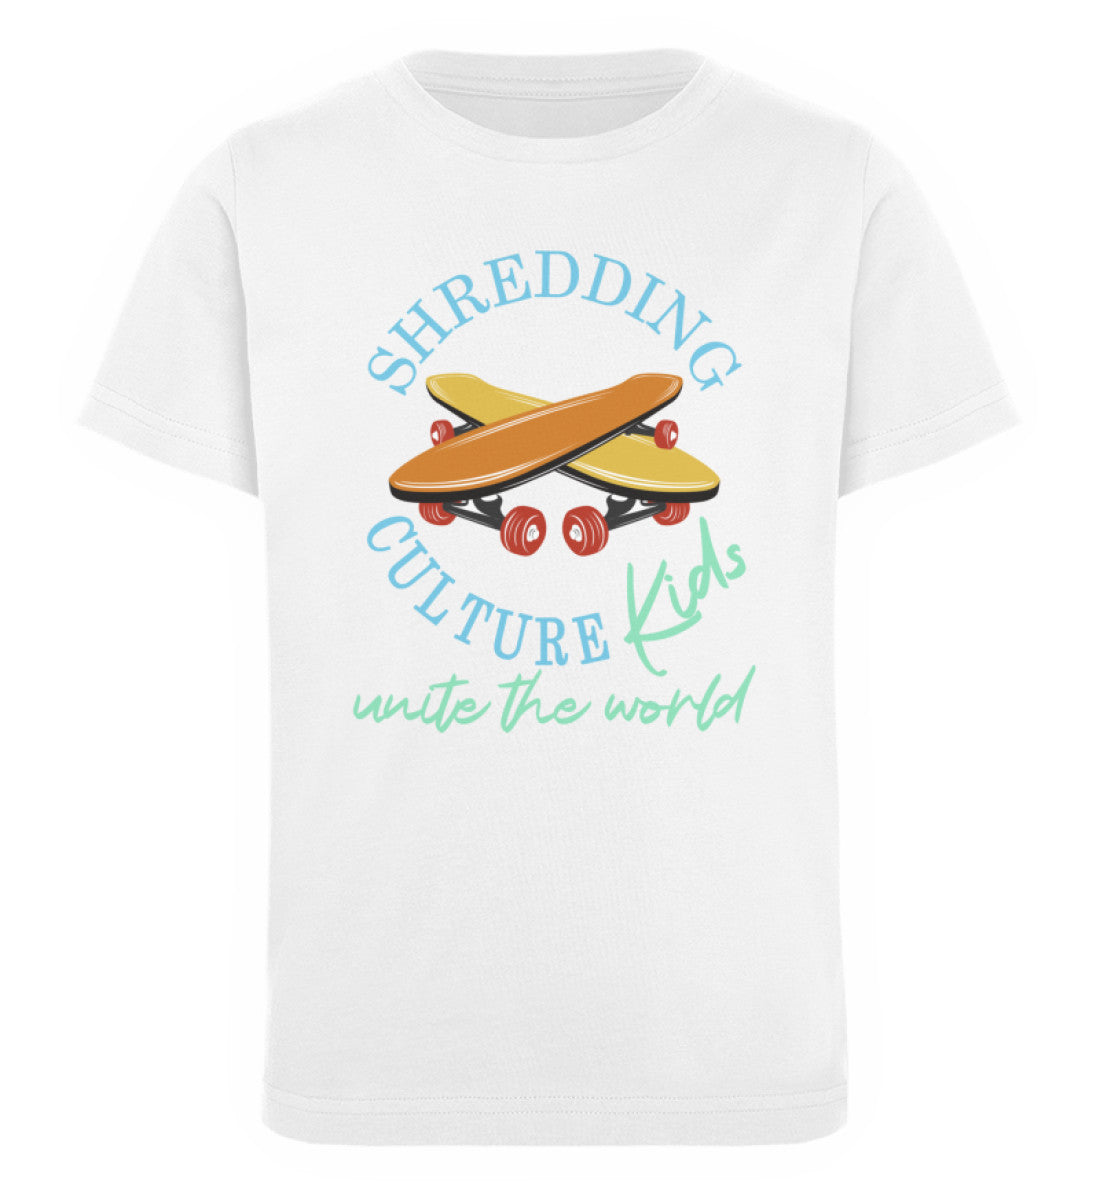 Weißes Kinder T-Shirt für Mädchen und Jungen bedruckt mit dem Design der Roger Rockawoo Kollektion shredding culture kids skateboard